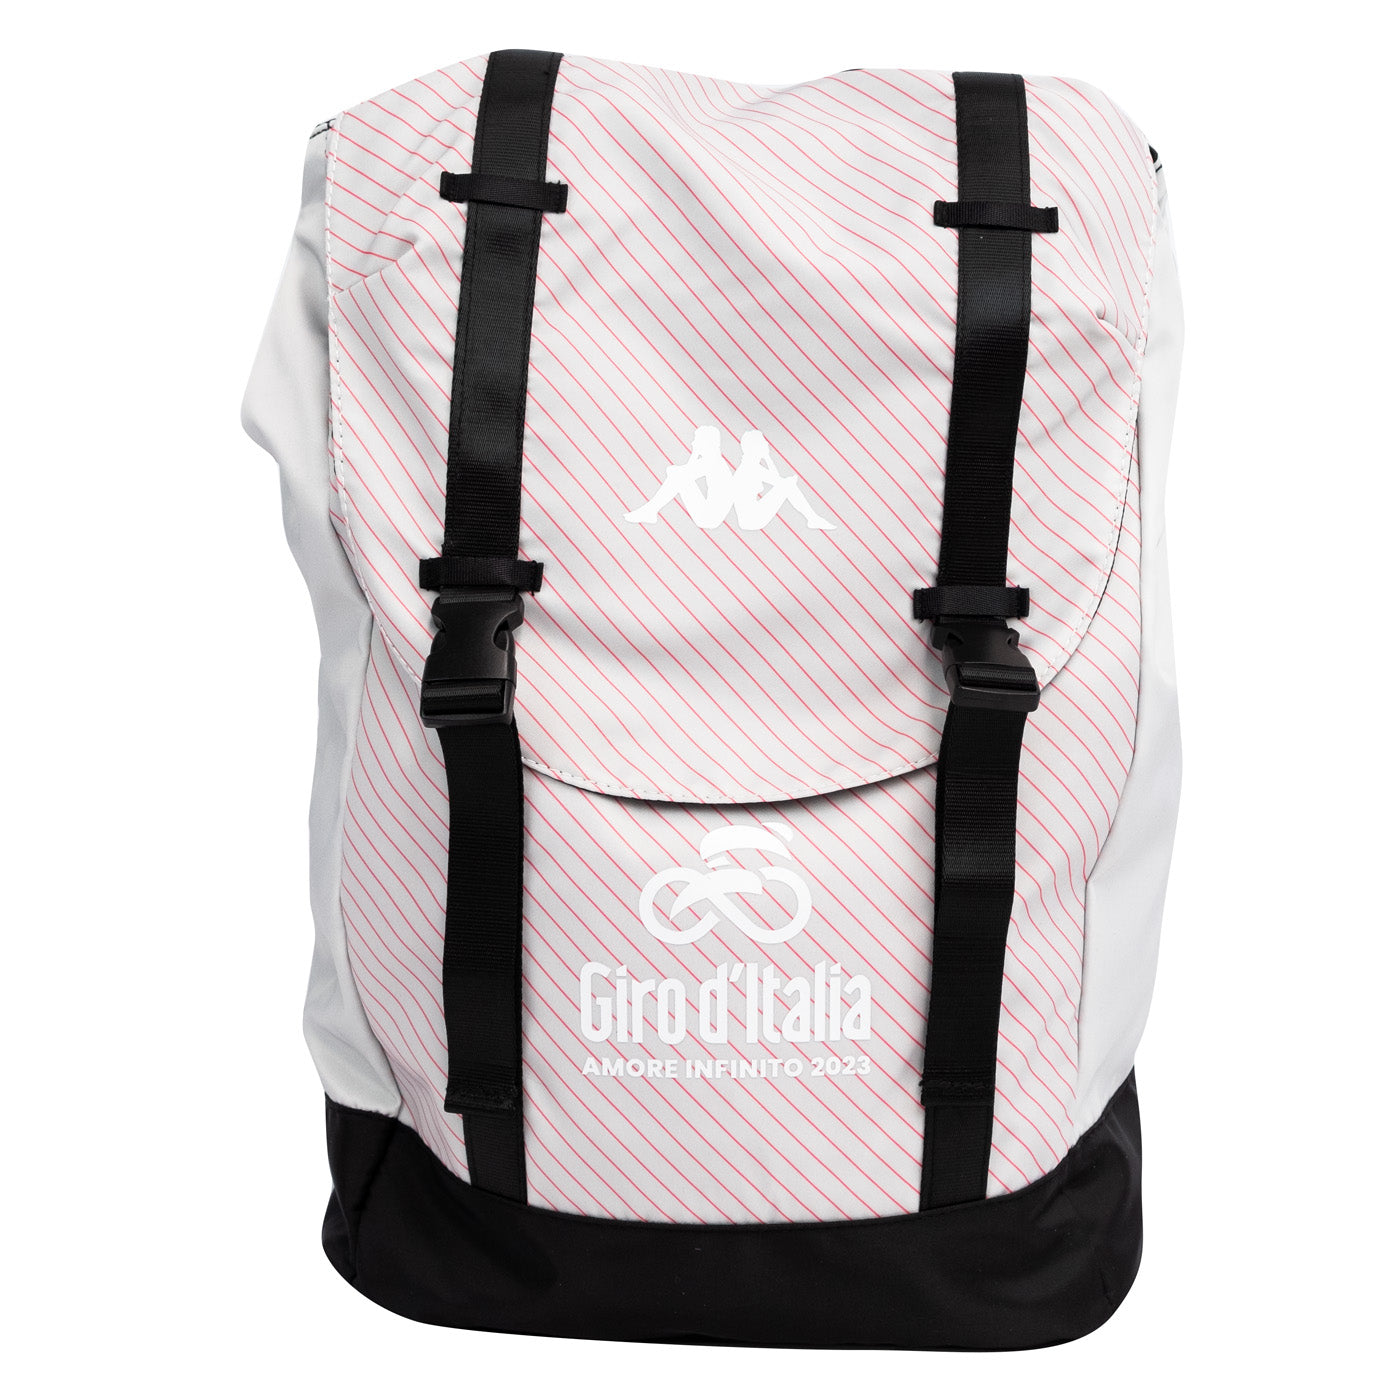 Giro d'Italia backpack - Grey